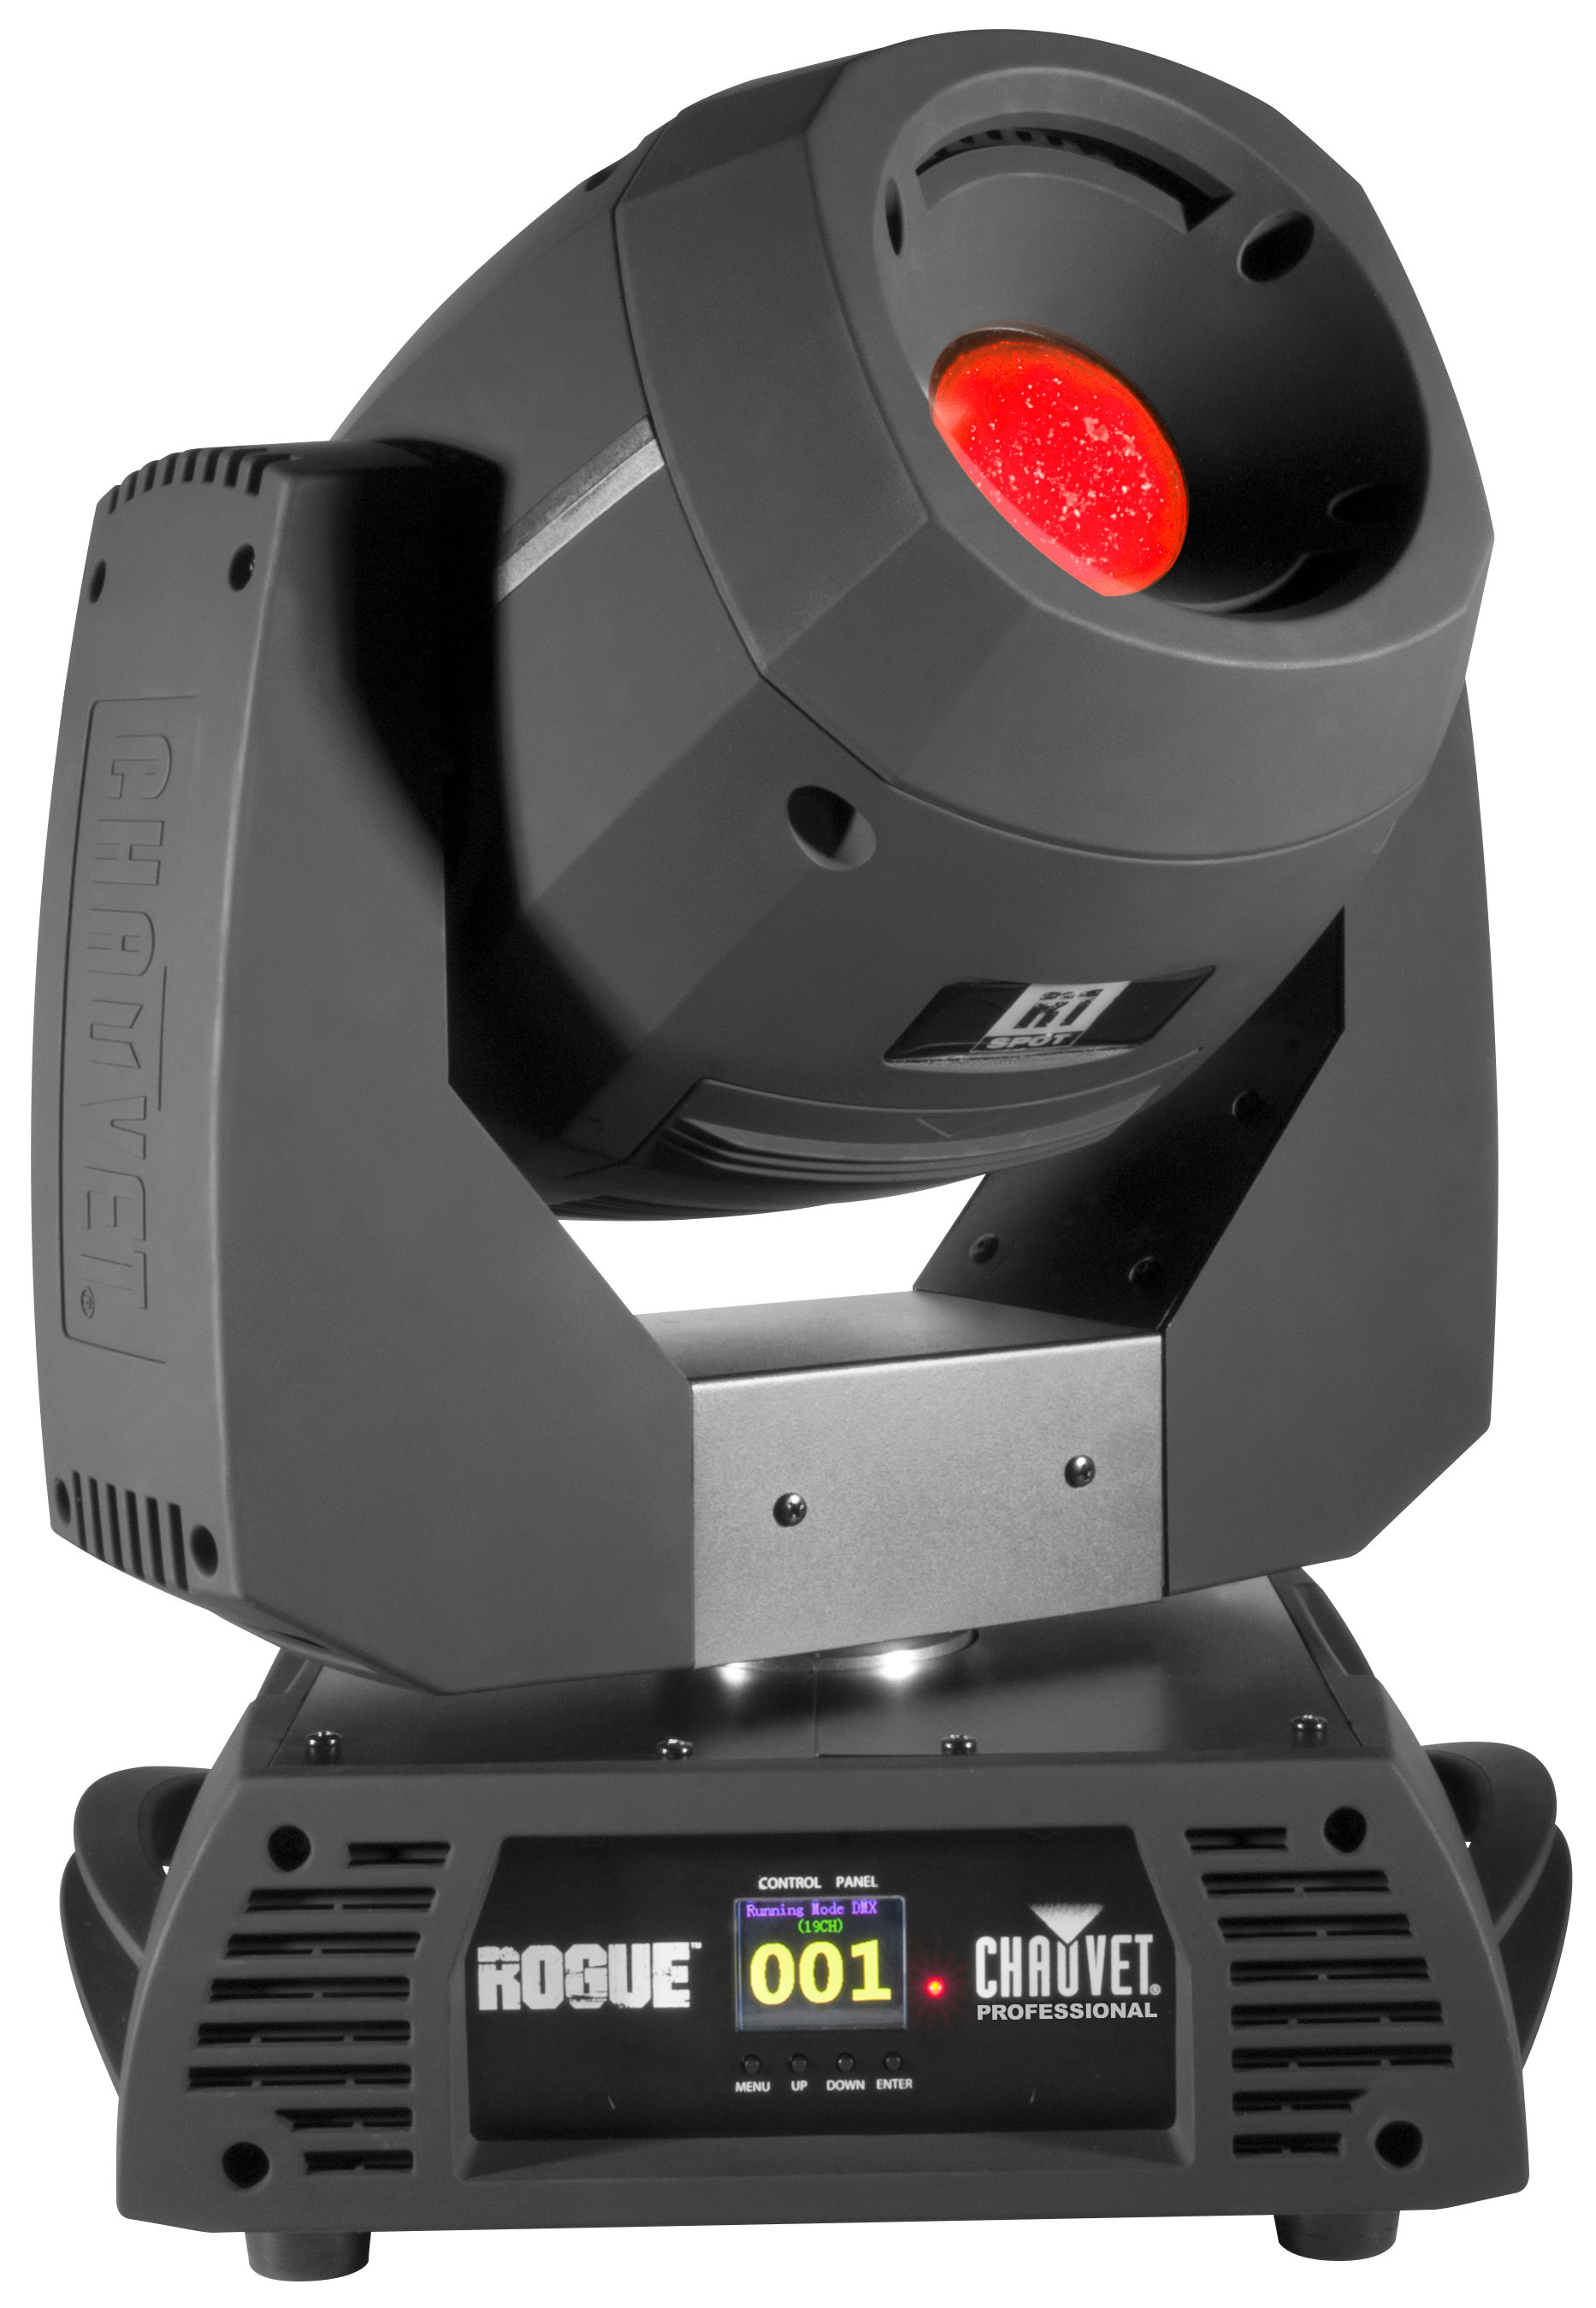 CHAUVET-PRO Rogue R2 Spot светодиодный прожектор с полным движением типа Spot